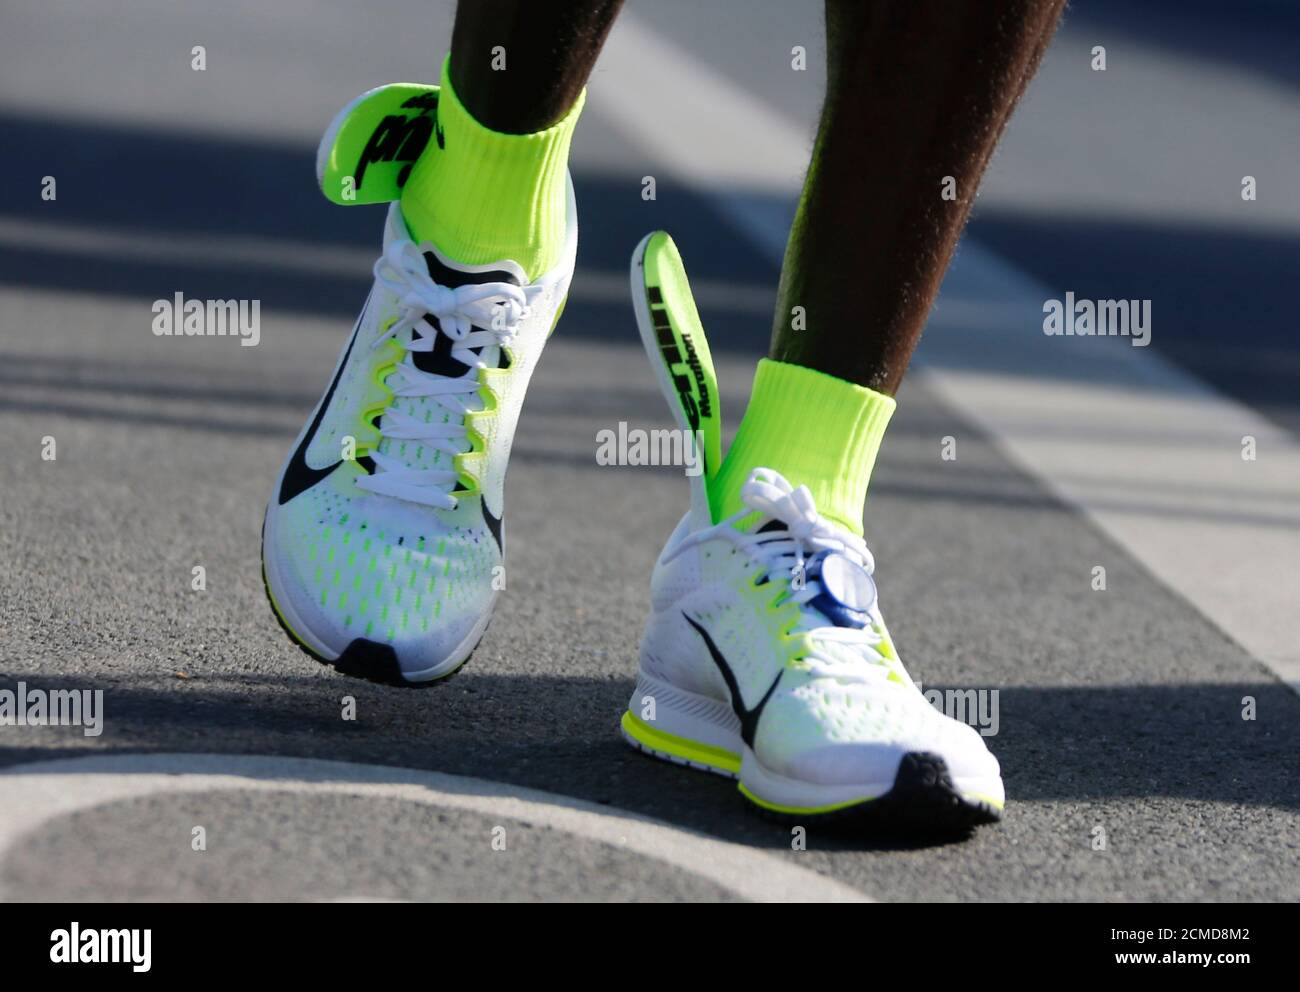 Le solette delle scarpe da running di Eliud Kipchoge in Kenya si vedono  scivolare fino alle caviglie, dopo aver superato il traguardo per vincere  la 42esima maratona di Berlino degli uomini, a